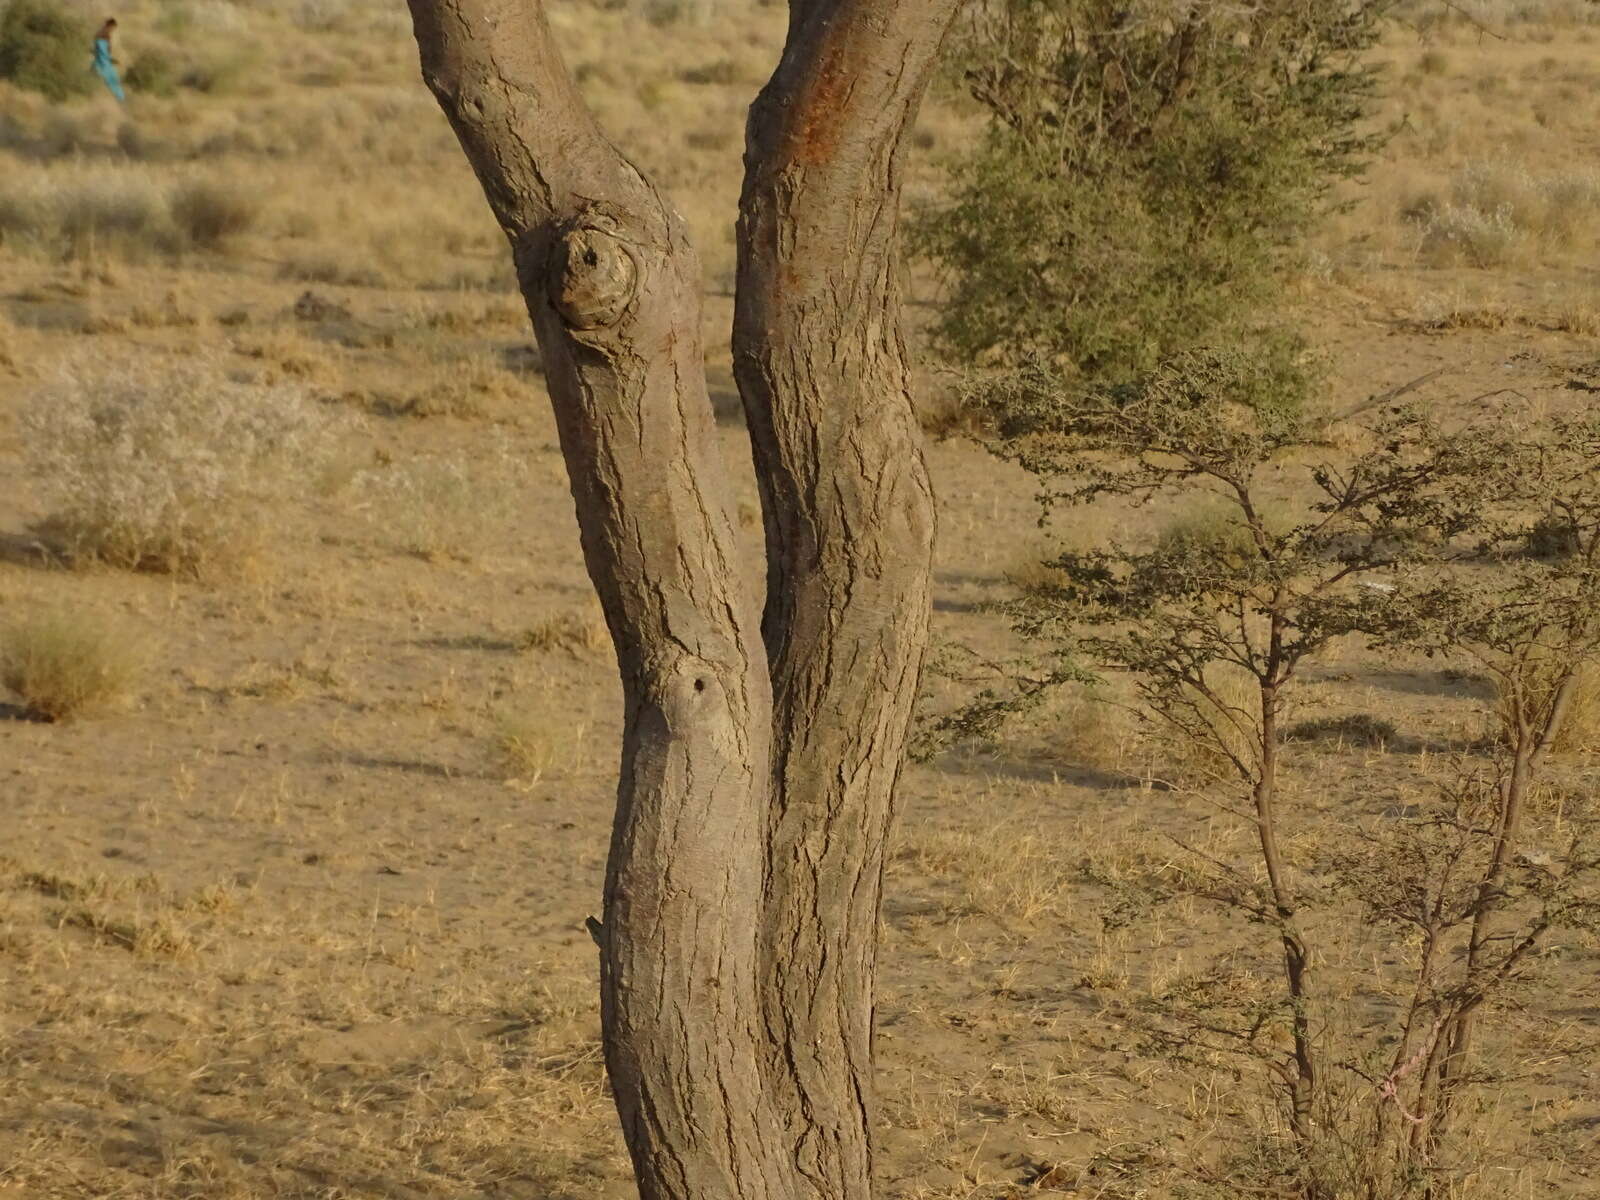 Image of umbrella thorn